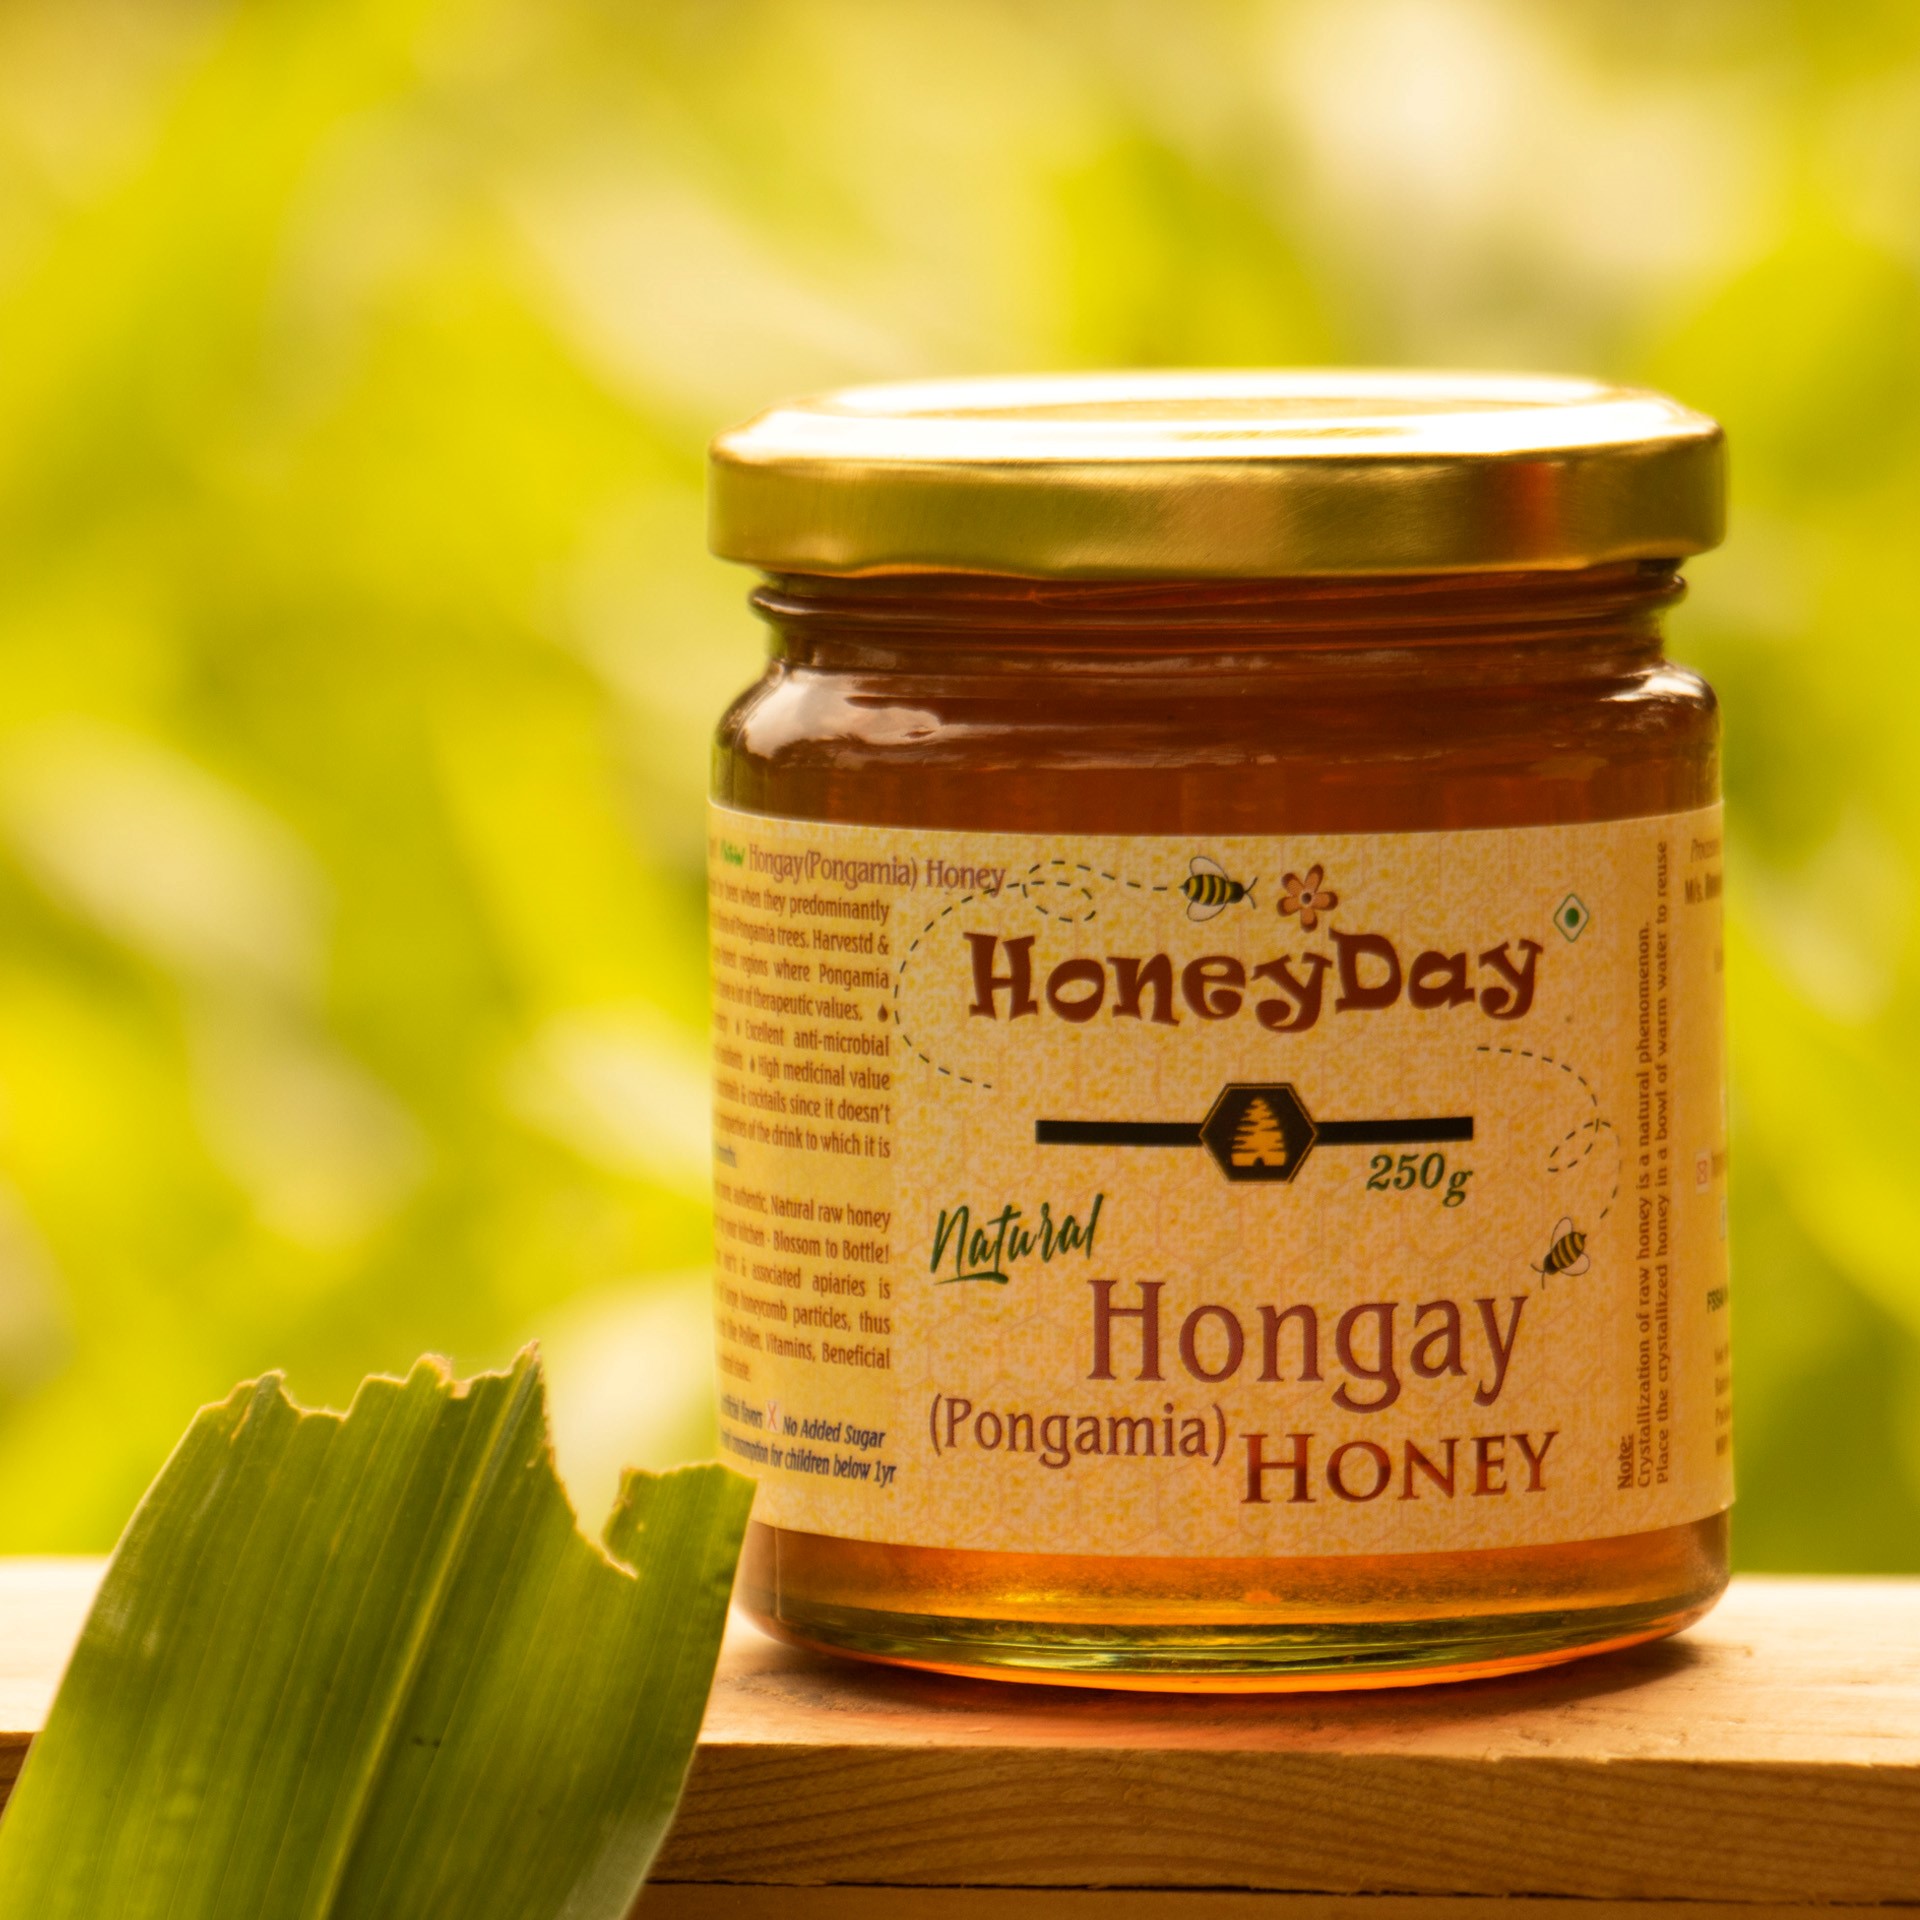 Hongay (Pongamia) Honey